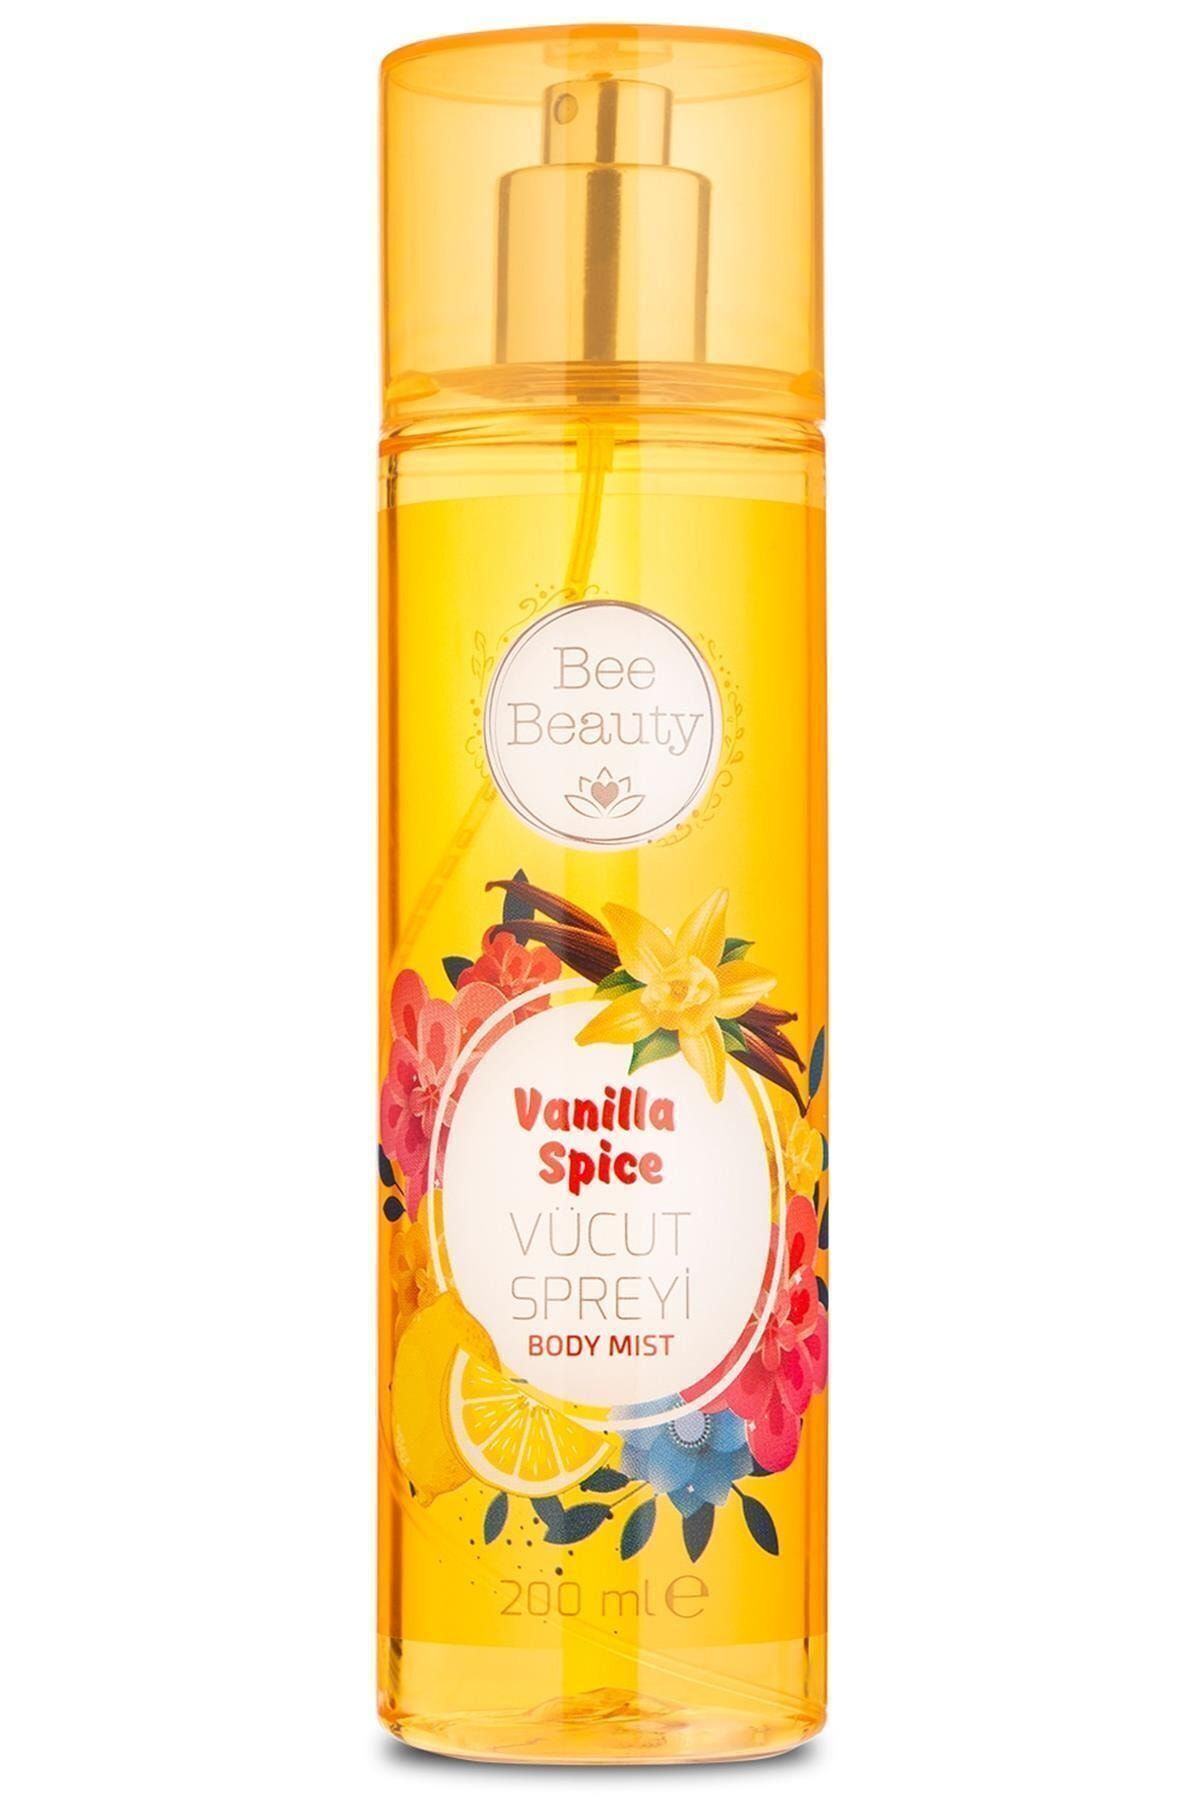 Bee Beauty Vanilla Spice Vücut Spreyi 200 Ml EGMTCRT1015350